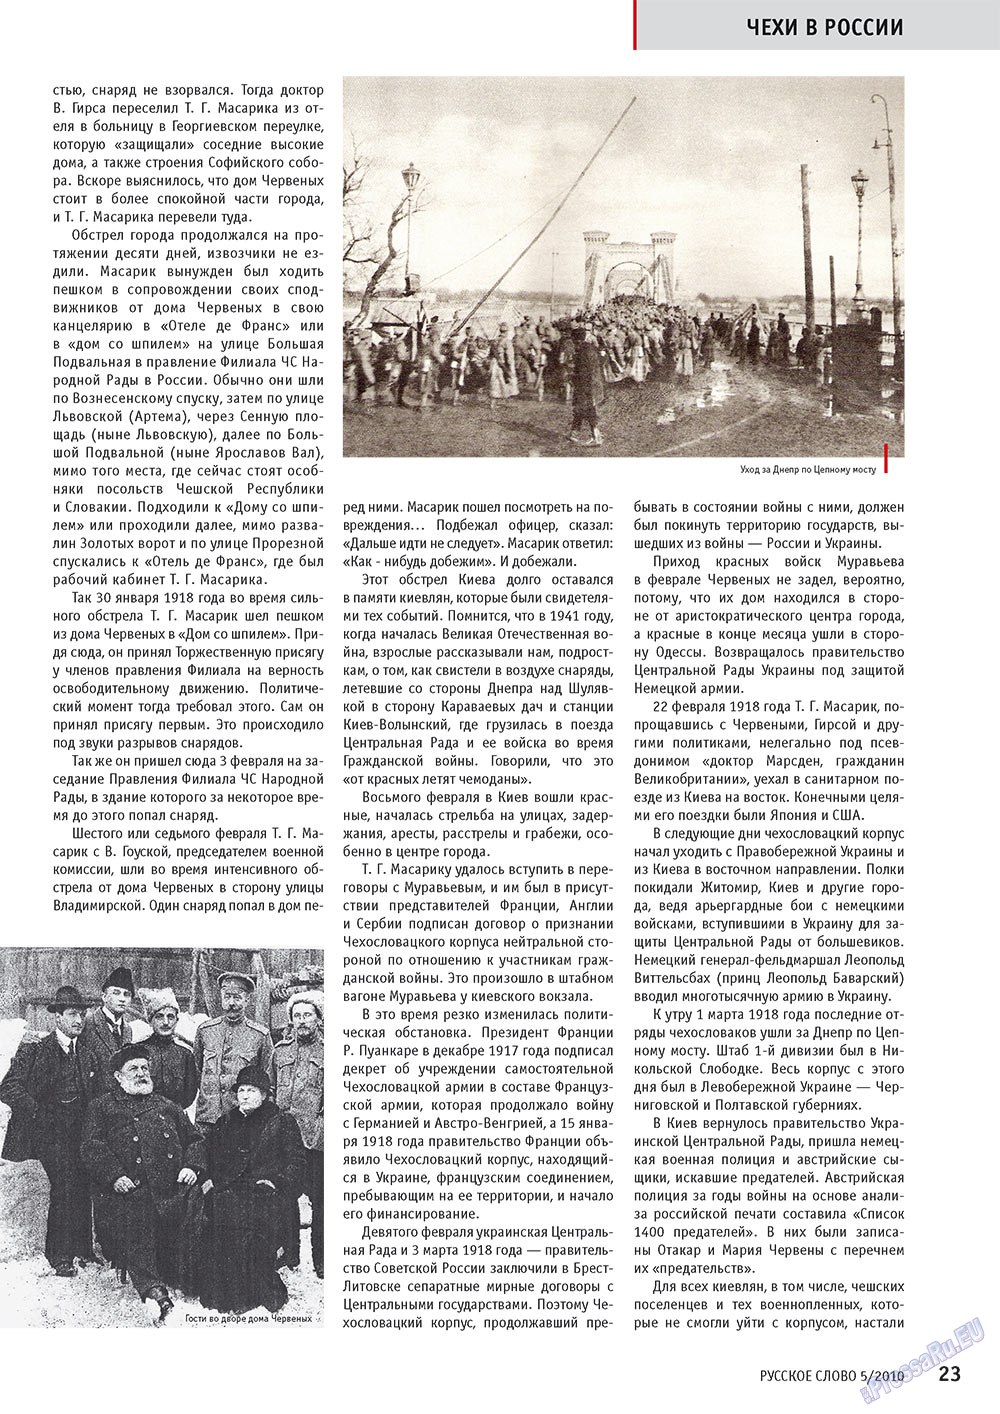 Русское слово, журнал. 2010 №5 стр.25